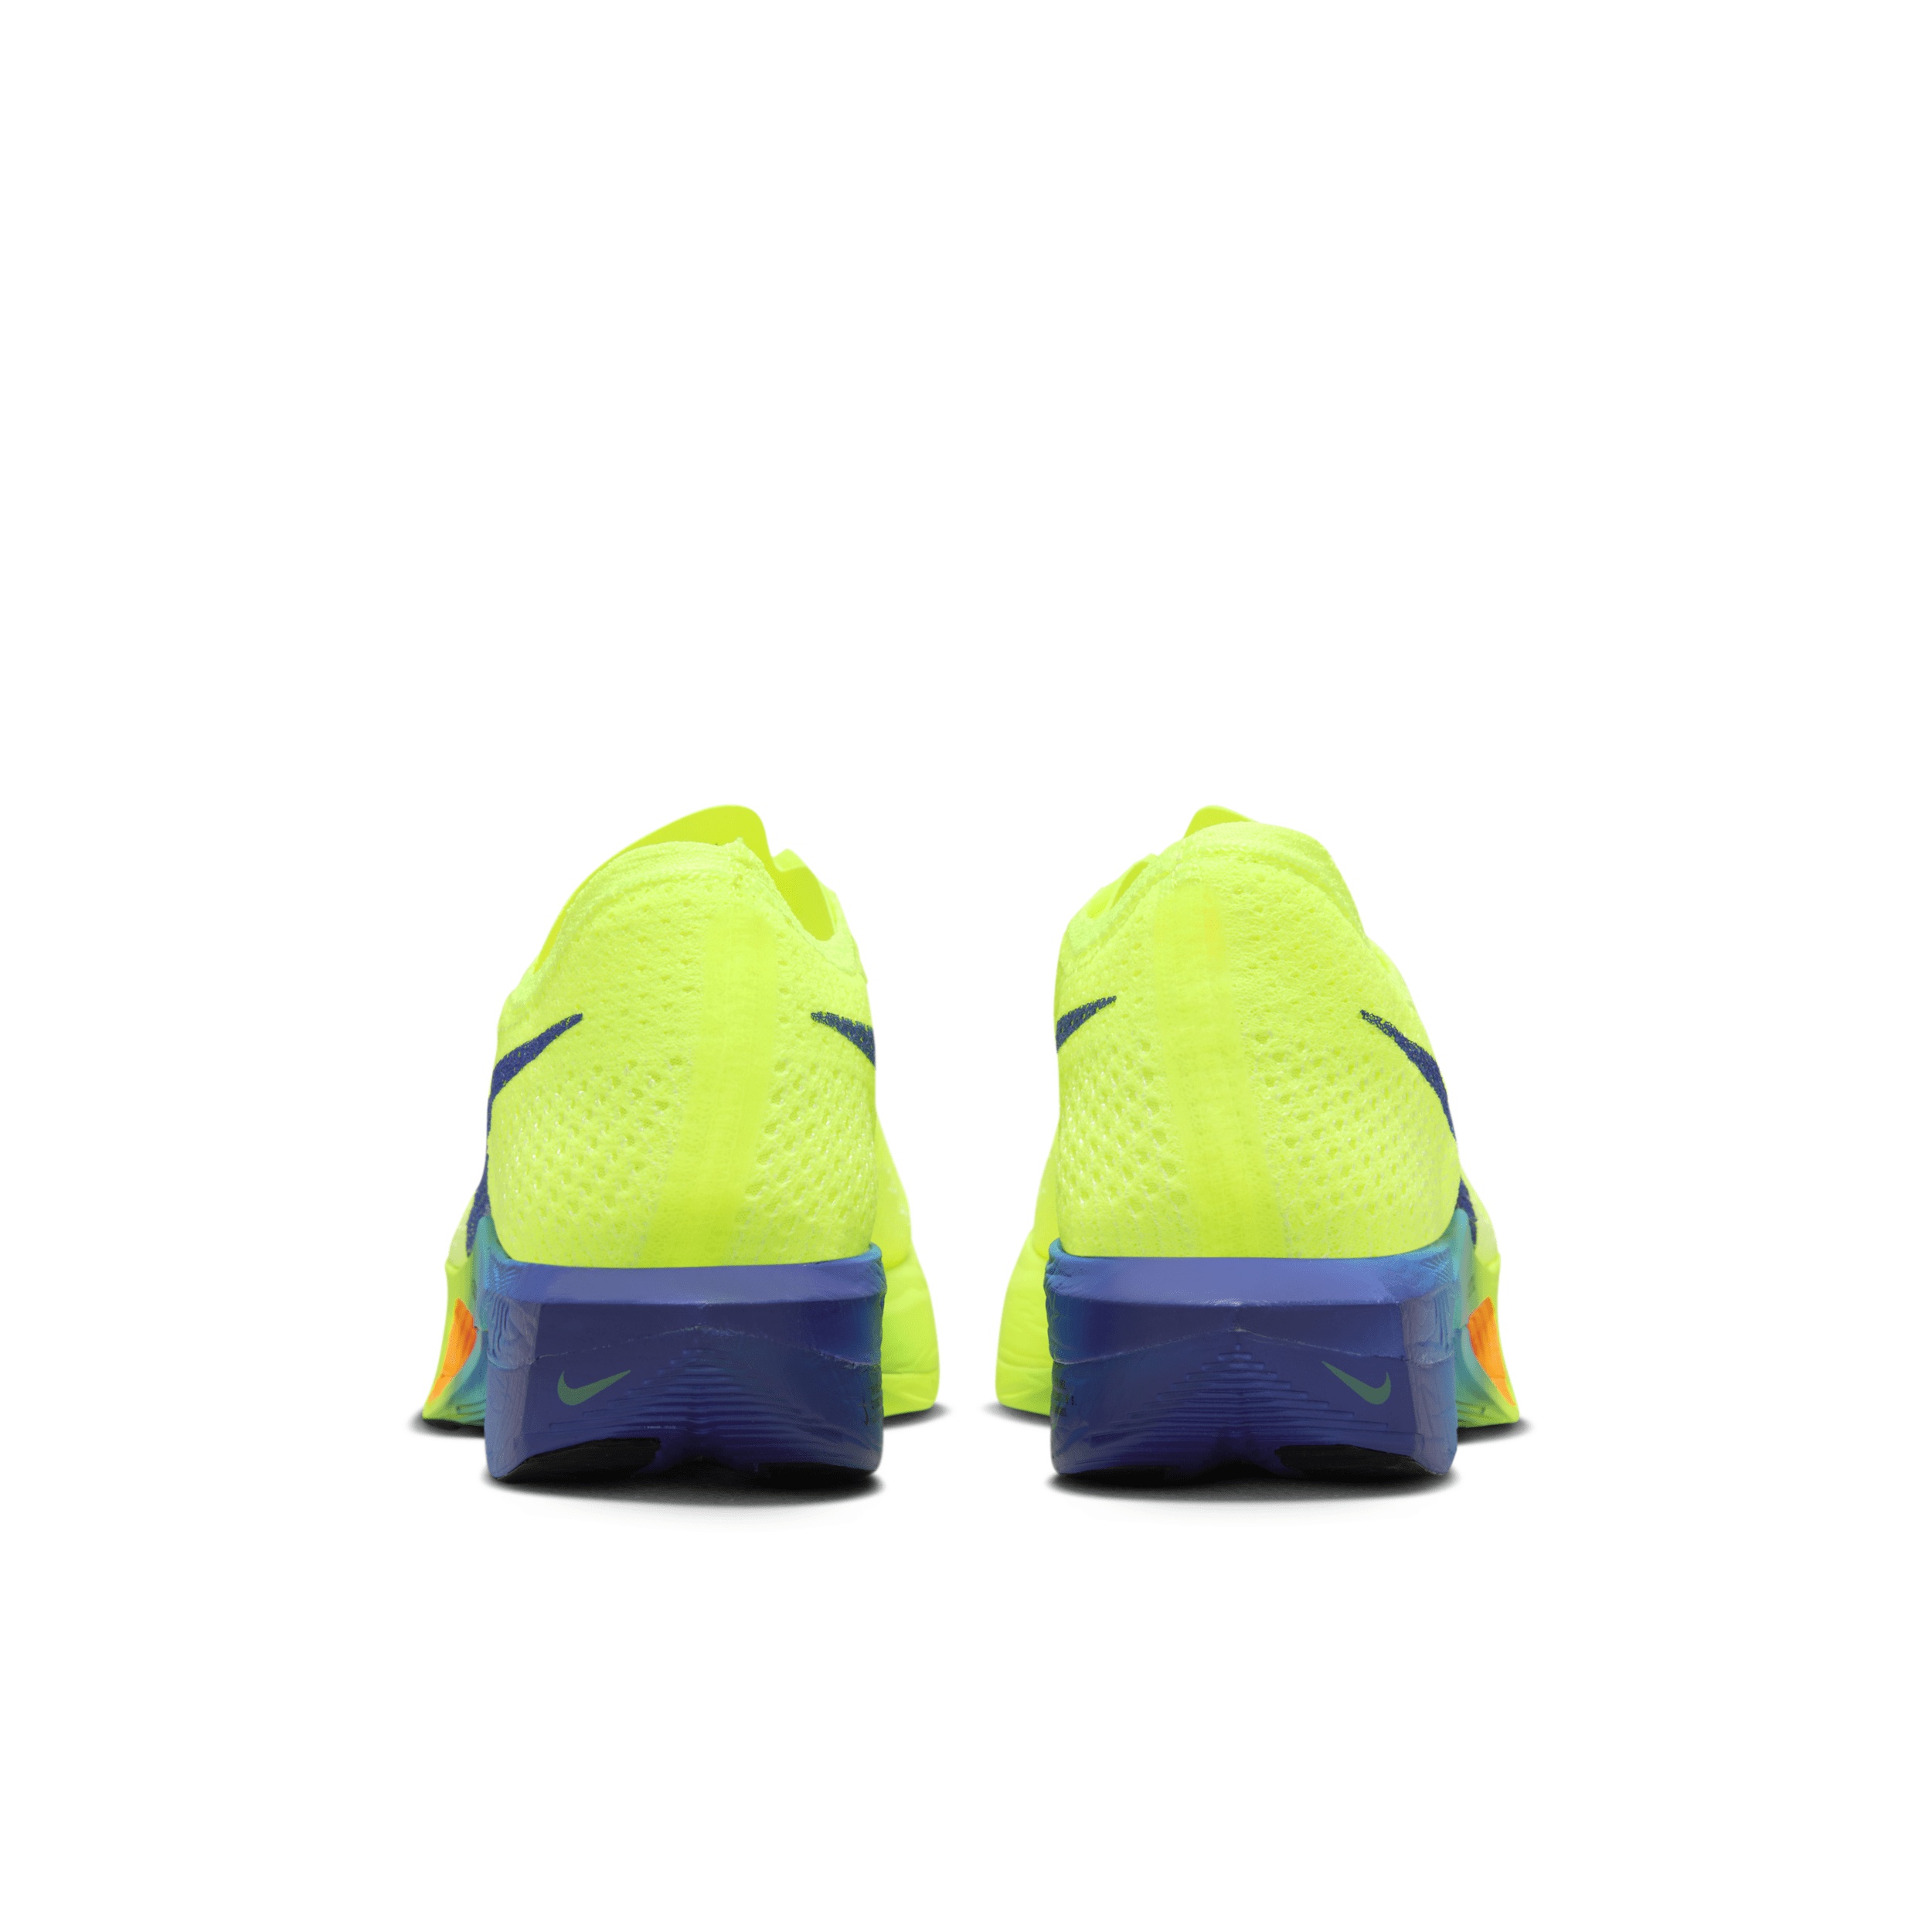 Nike Women's Vaporfly 3 Road Racing Shoes - 6